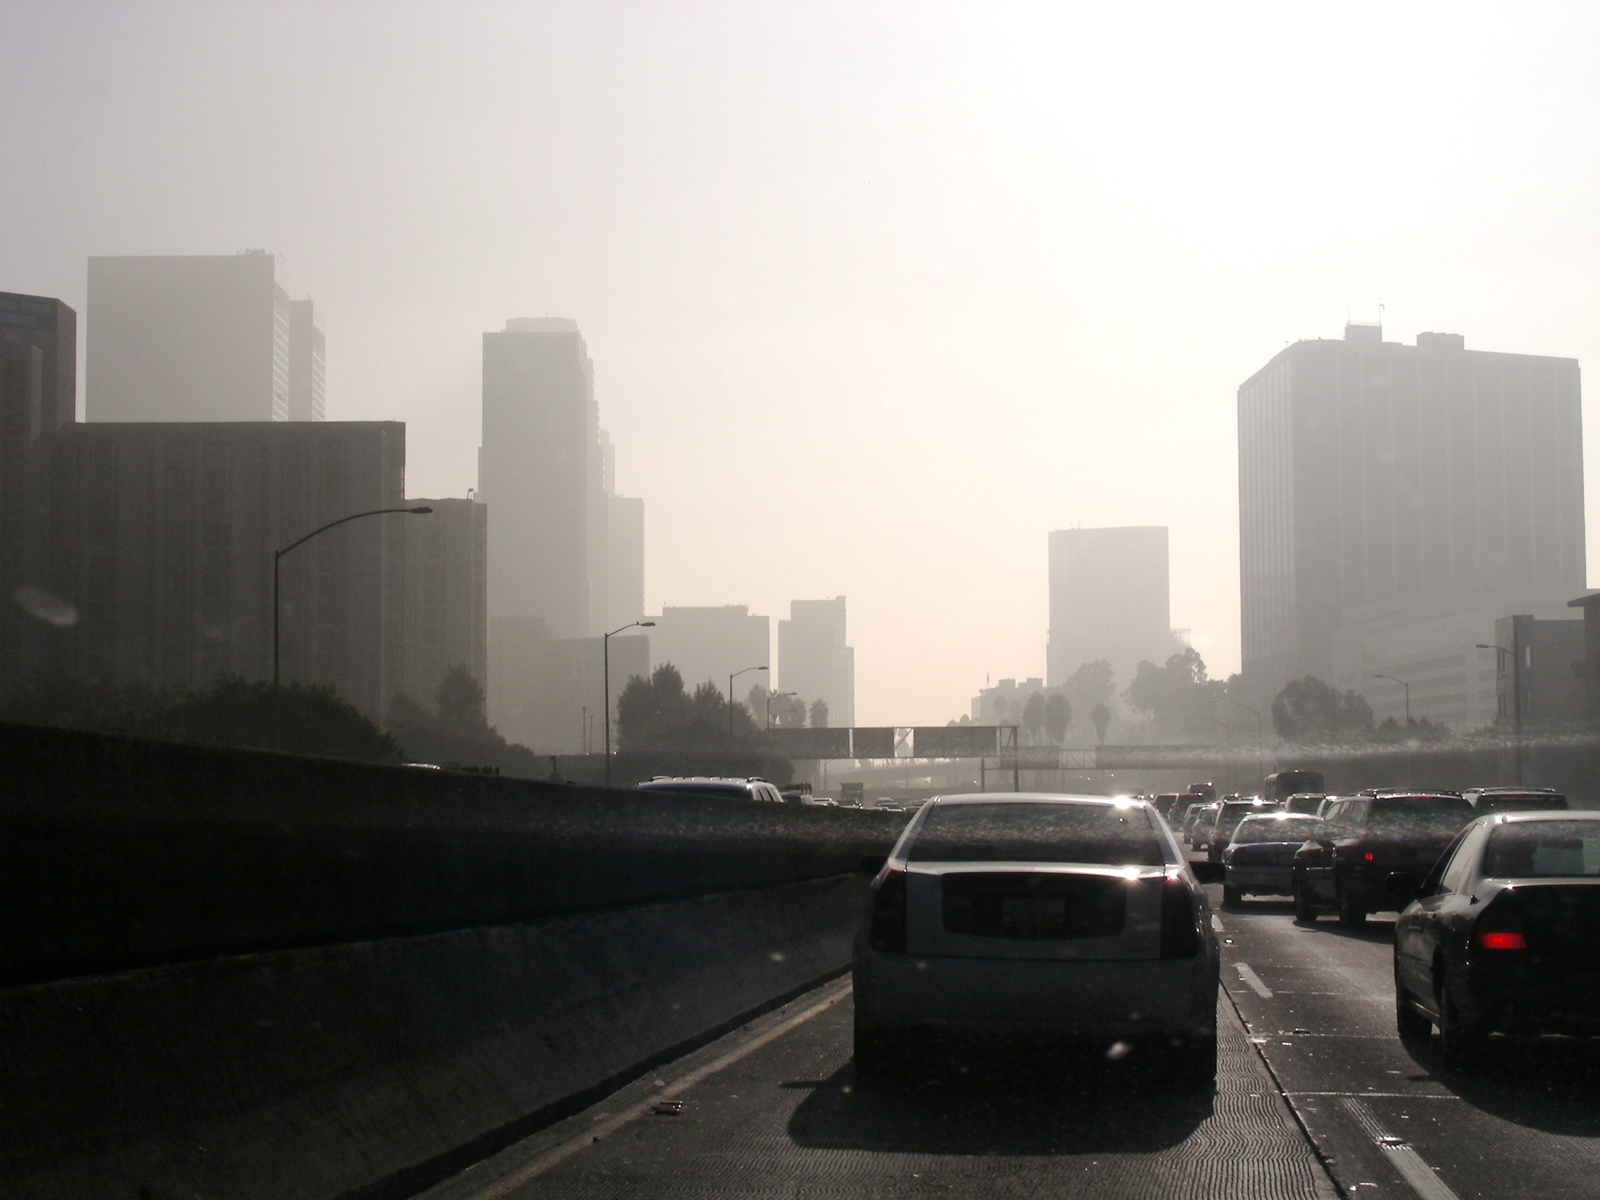 Polluted freeway scene in LA California